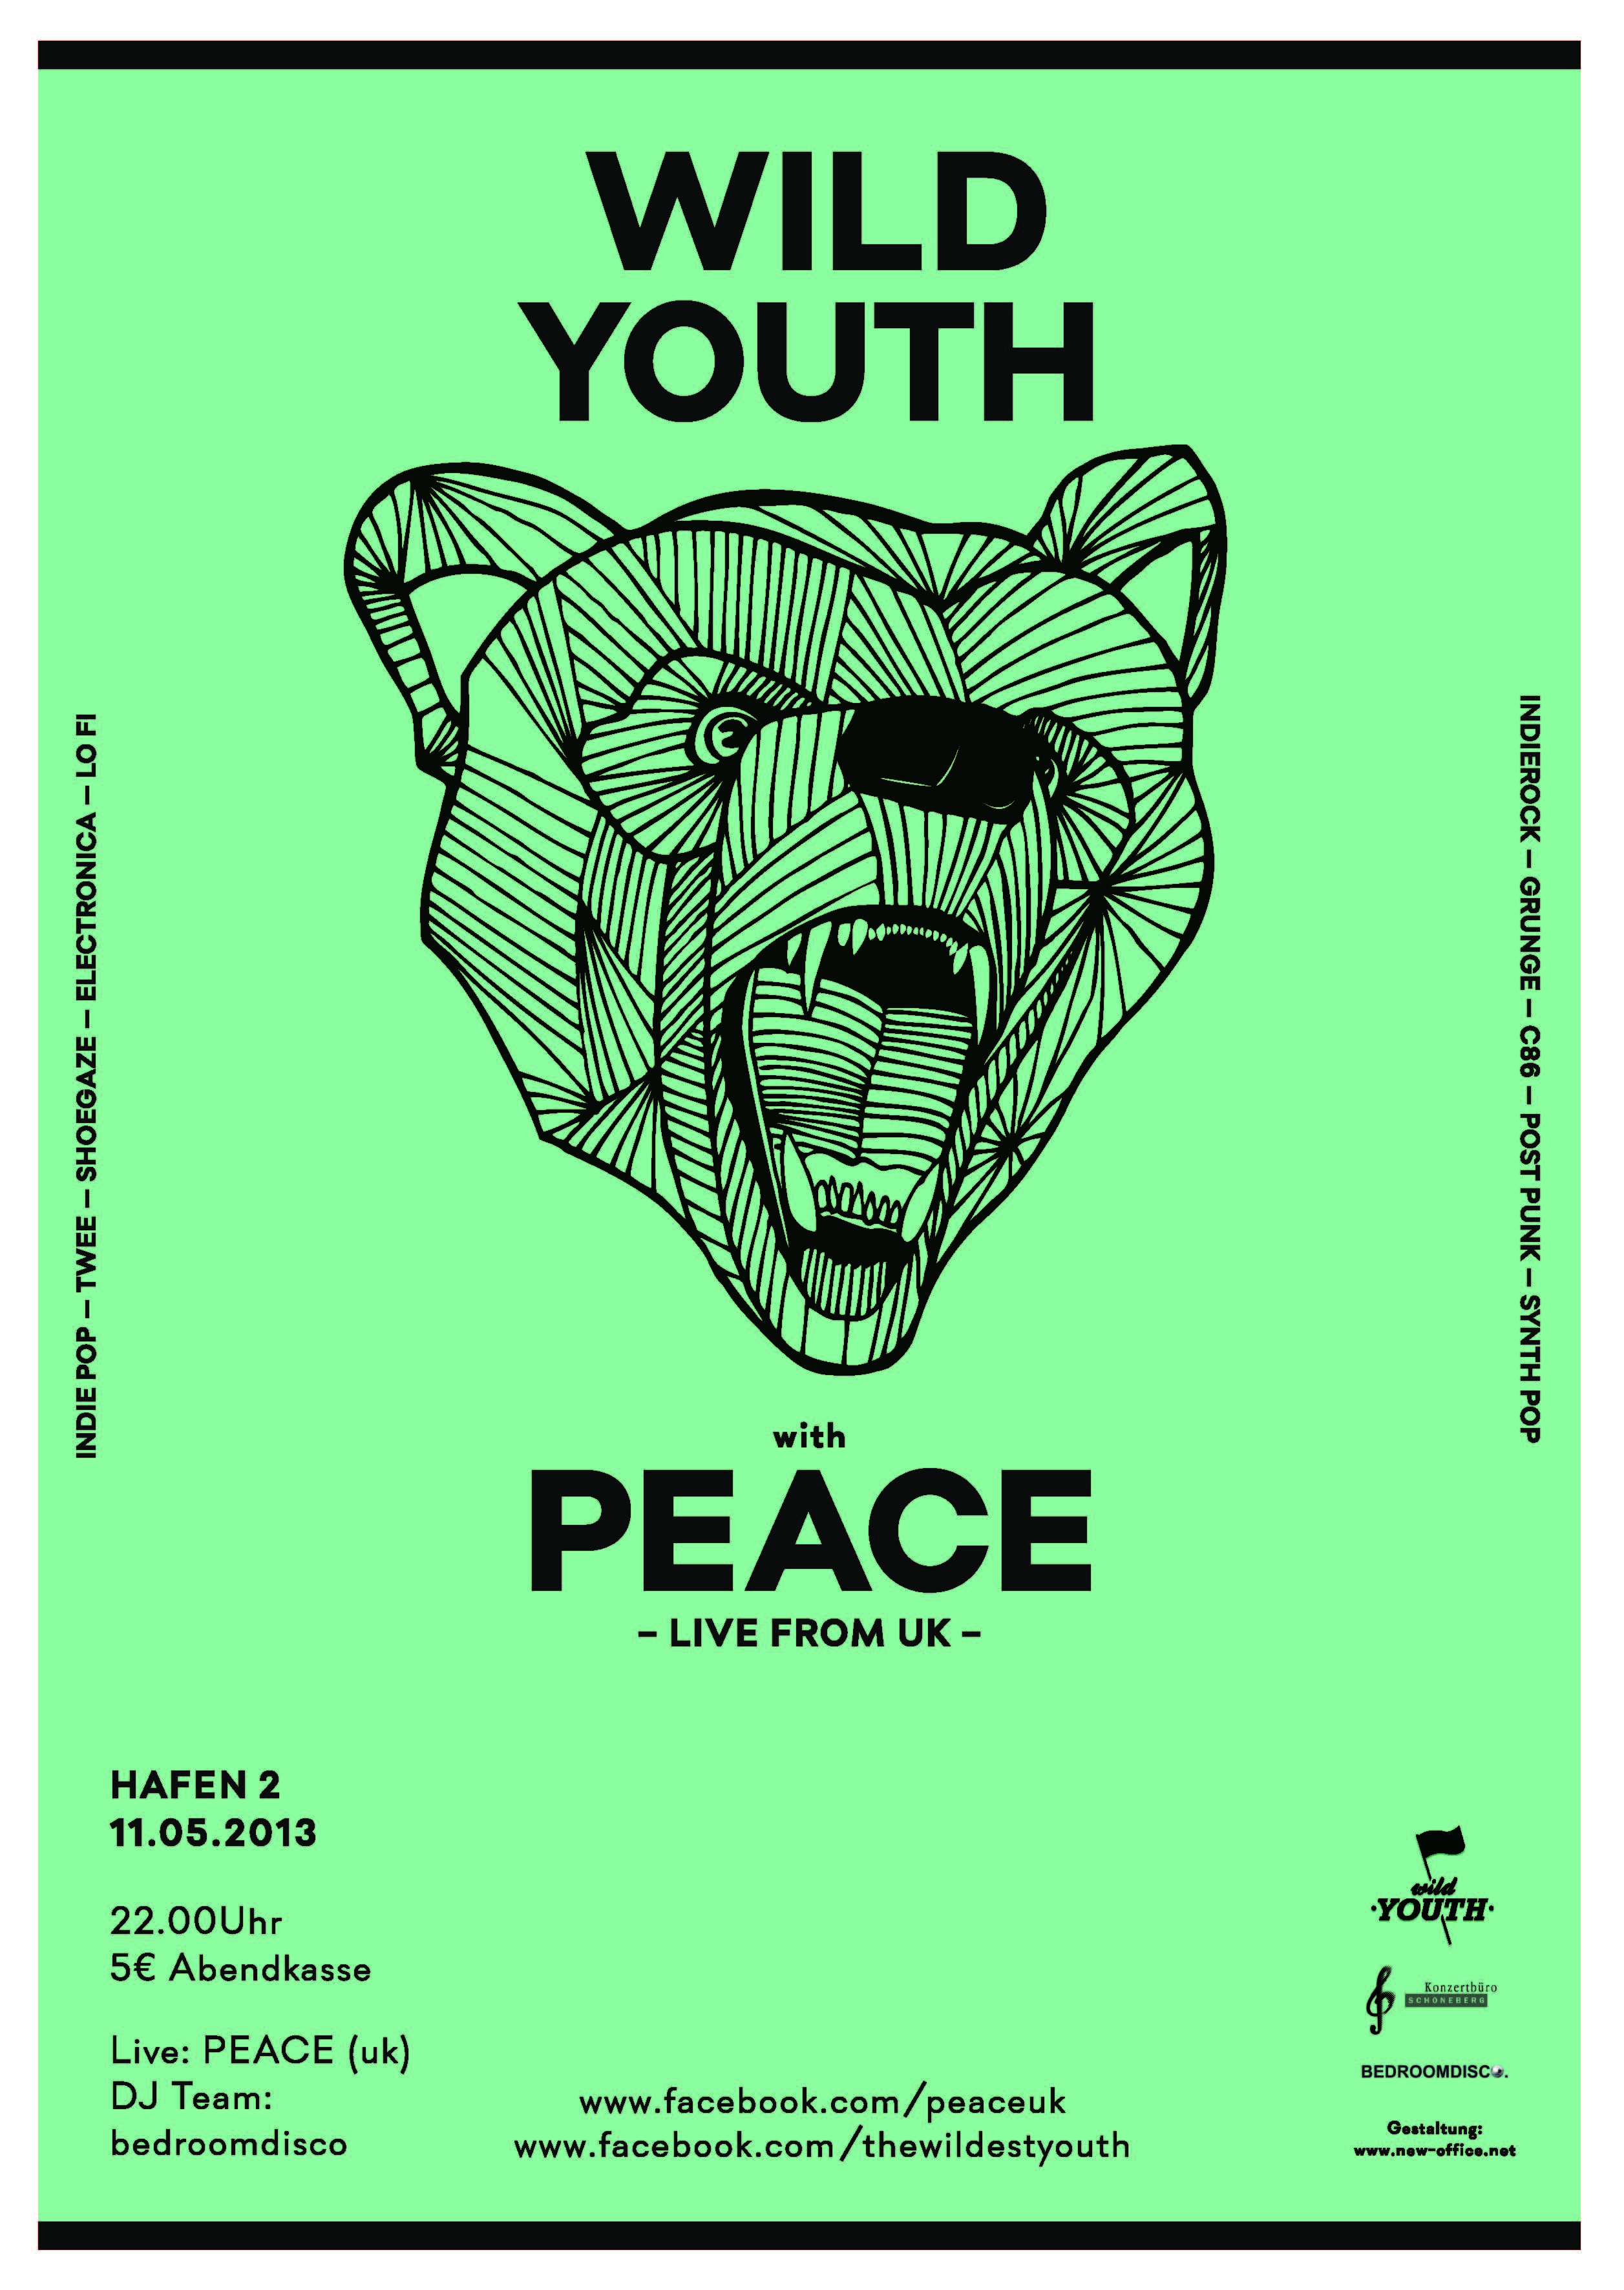 WILD YOUTH – morgen im Hafen 2 mit Peace!